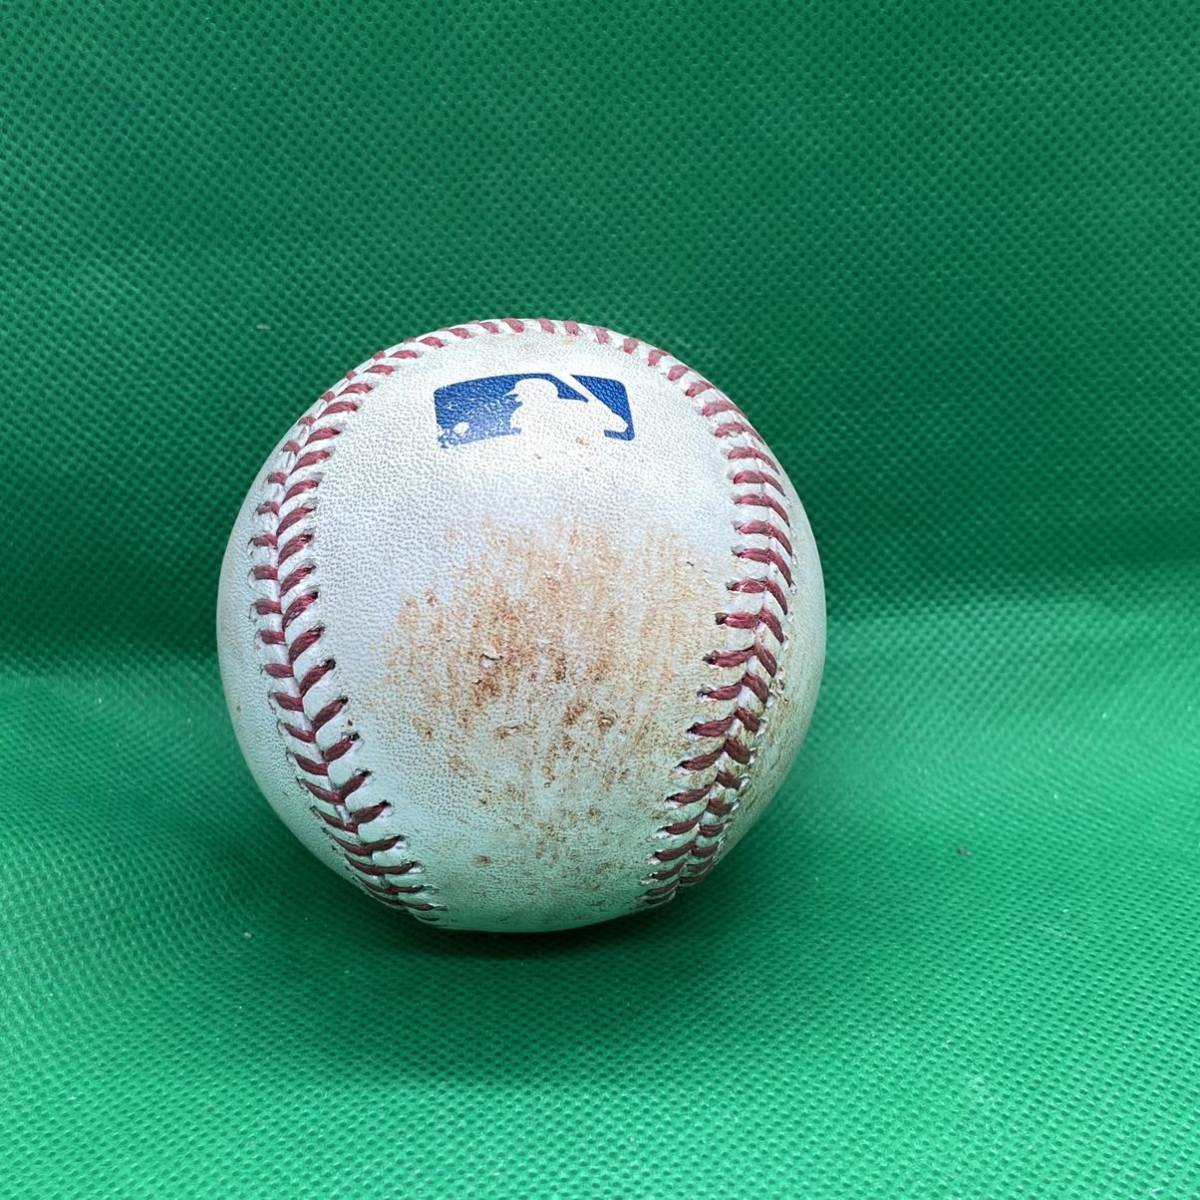 超レア アストロズ 青木宣親 2017年 実使用球 ボール MLB ホログラム